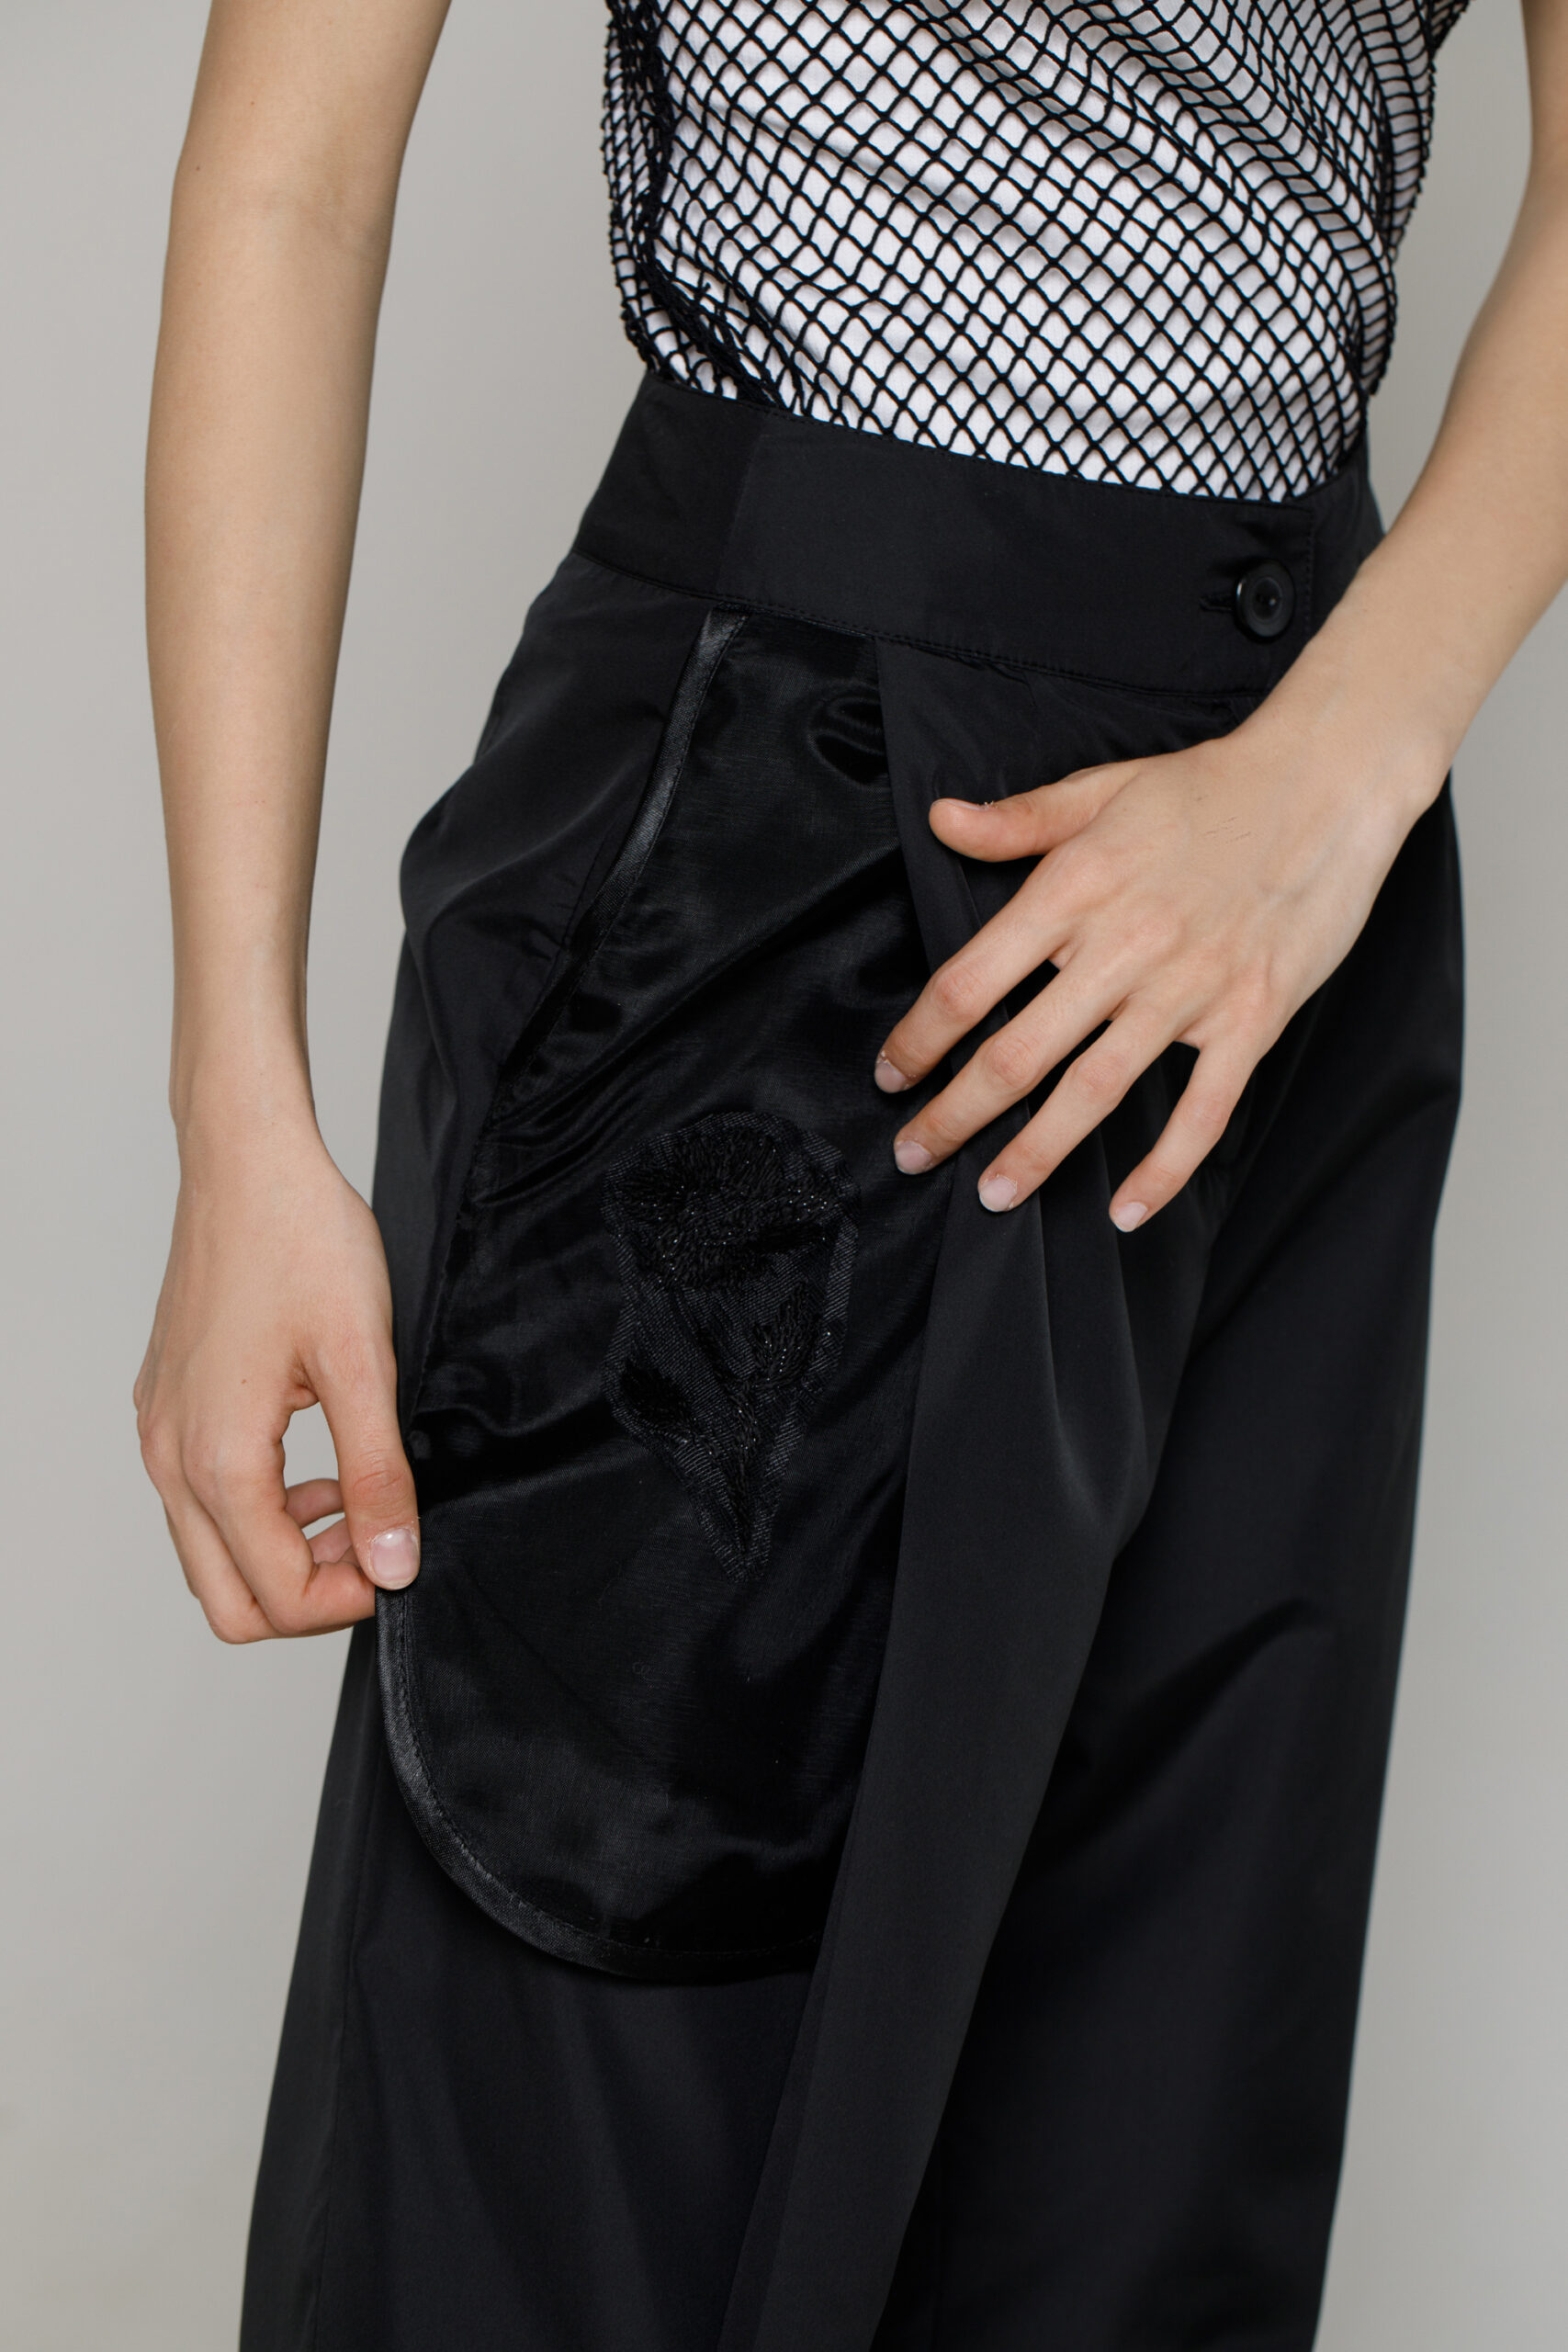 Pantalon ROCO elegant negru din viscoza si organza. Materiale naturale, design unicat, cu broderie si aplicatii handmade